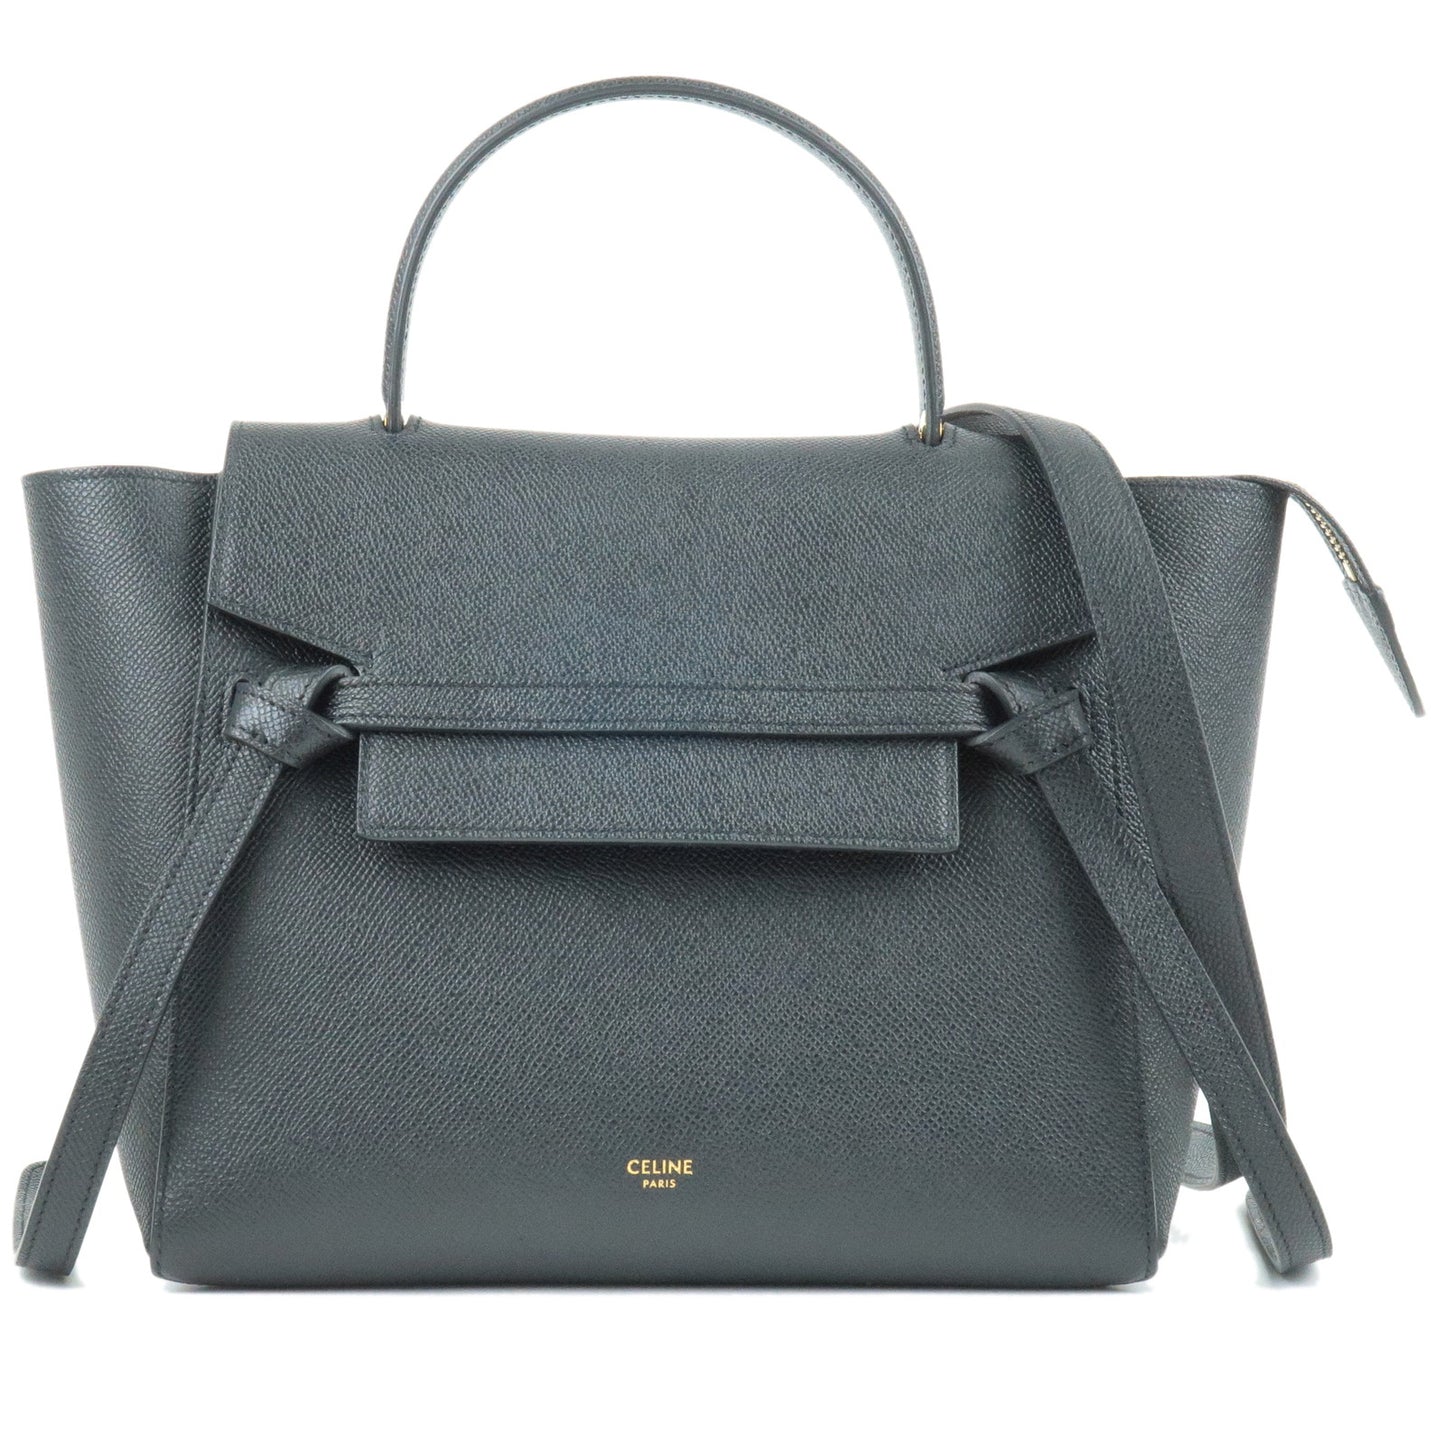 CELINE-Leather-Micro-Belt-Bag-2Way-Shoulder-Bag-Black-189153